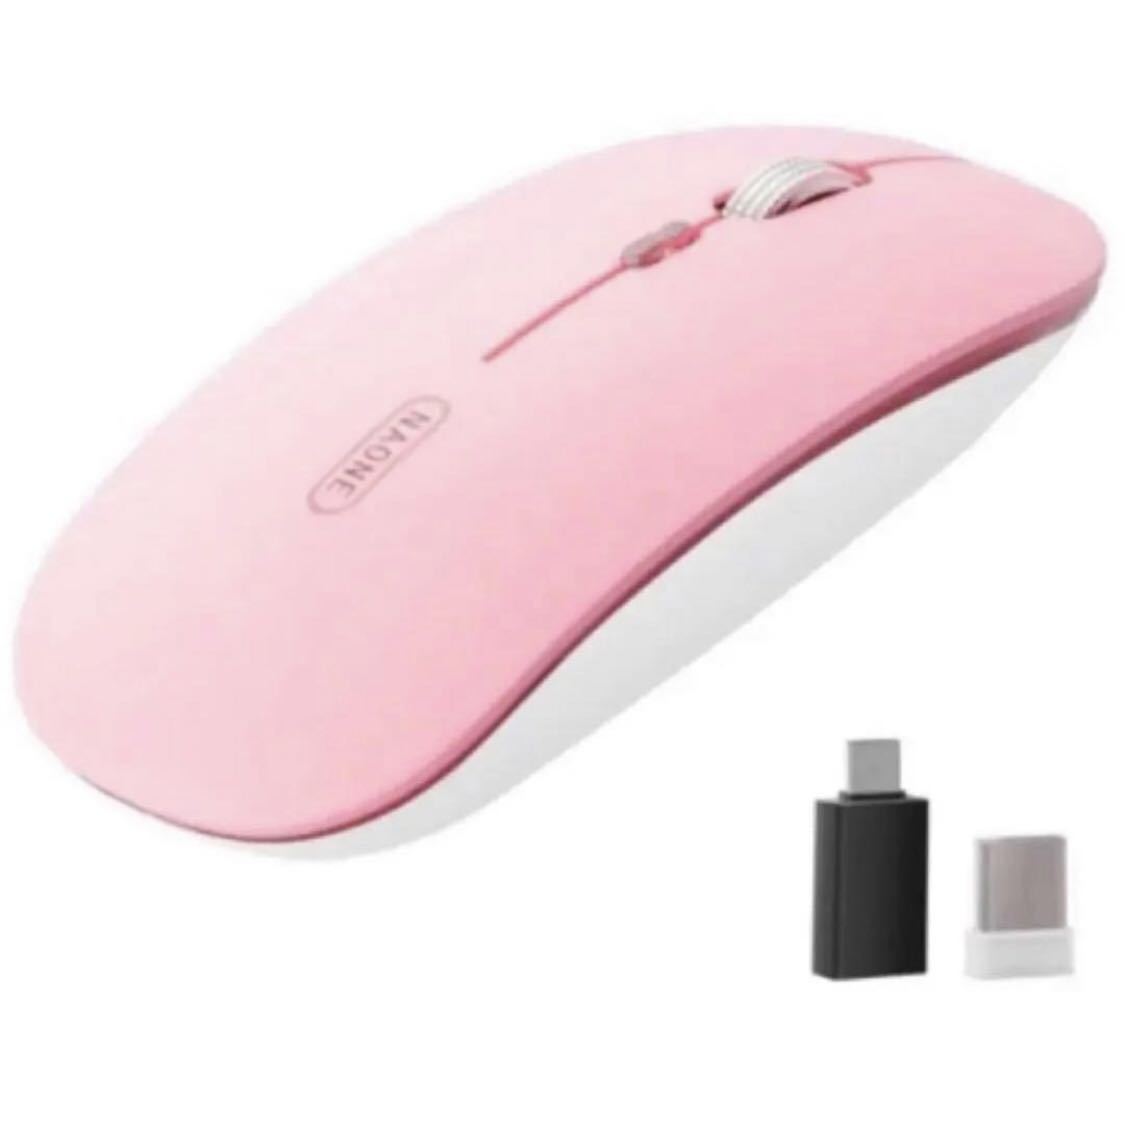 ワイヤレスマウス可愛いピンク色BB524Bluetooth 静音 軽量 充電 ポータブルオフィスマウス 充電式マウス薄型 最新版_画像1